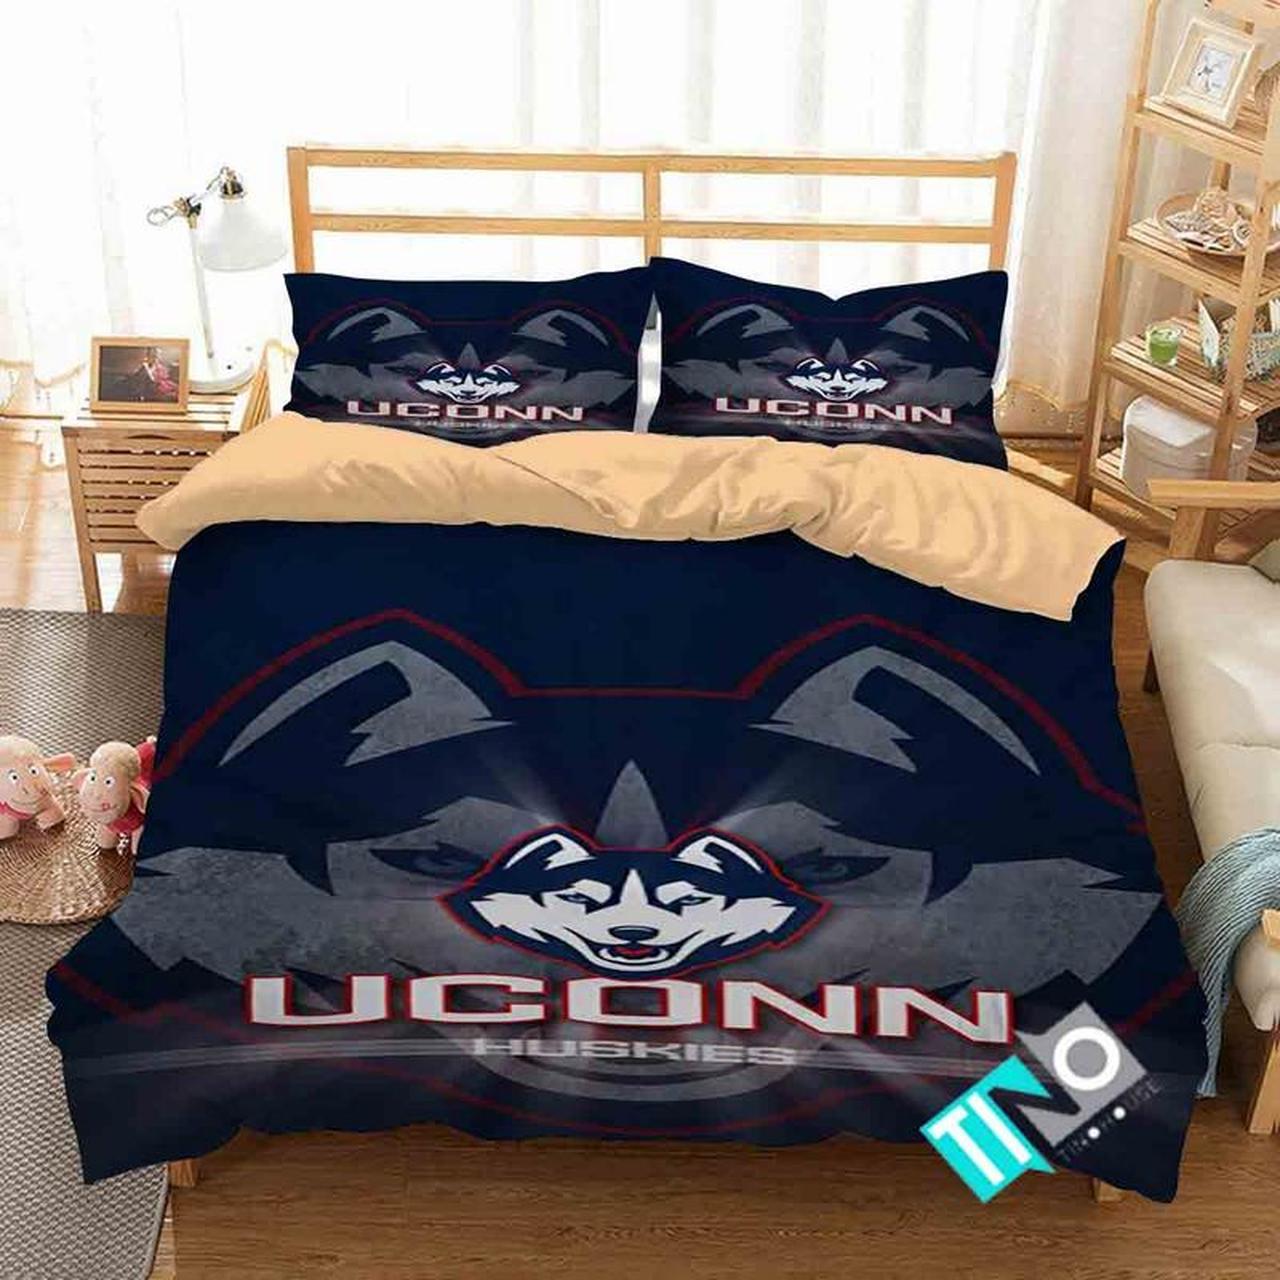 BEST UConn Huskies NCAA blue Duvet Cover Bedding Set1